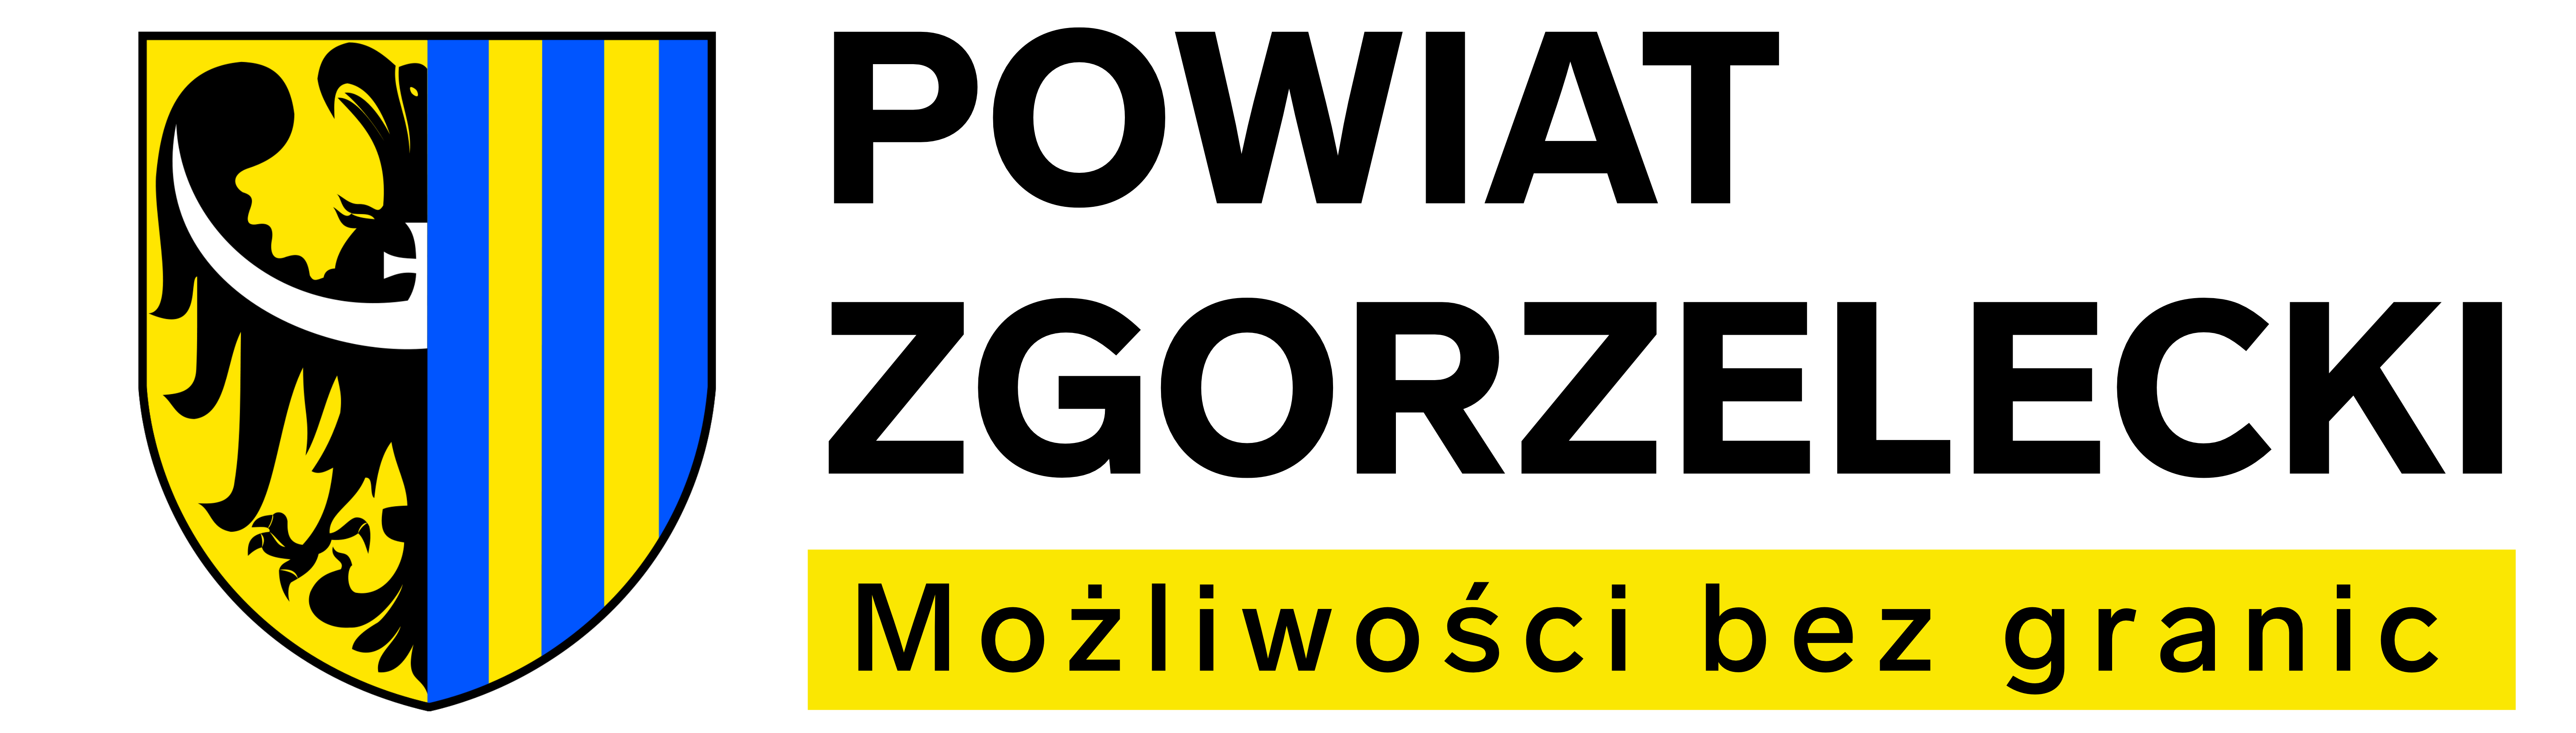 Powiat Zgorzelecki